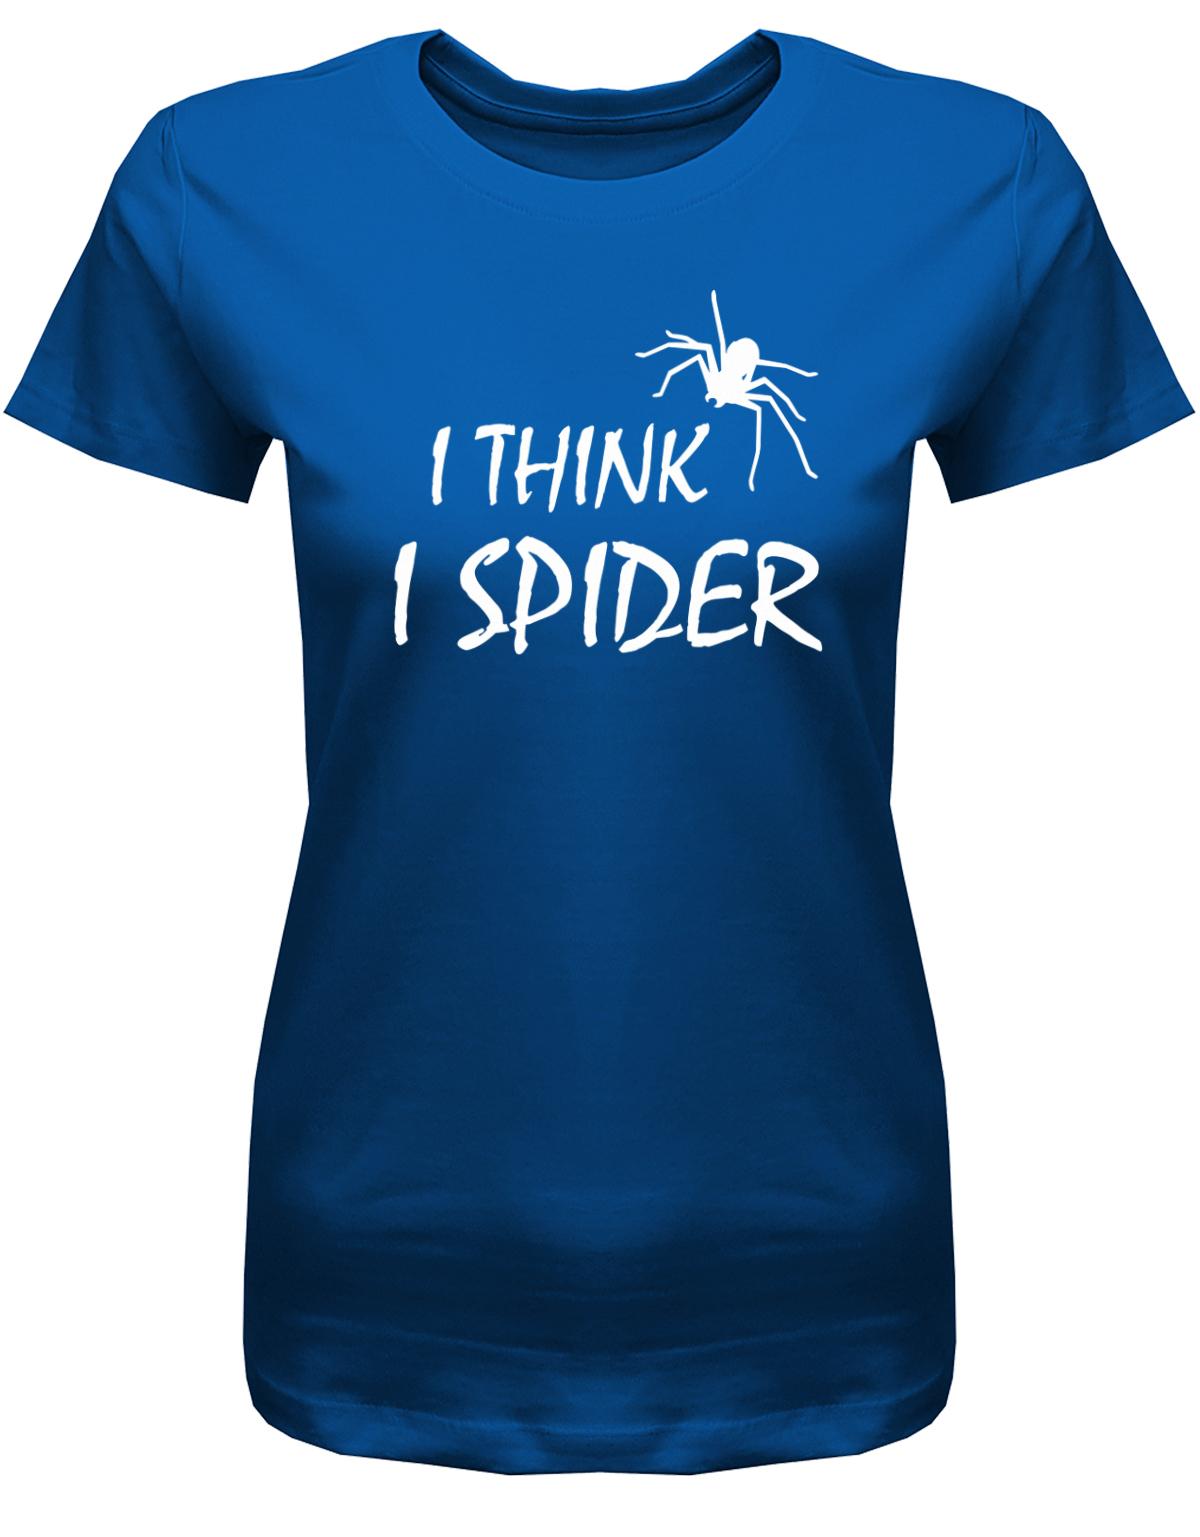 i-think-i-spider-damen-shirt-royalblauOEo7Sffphzf4E